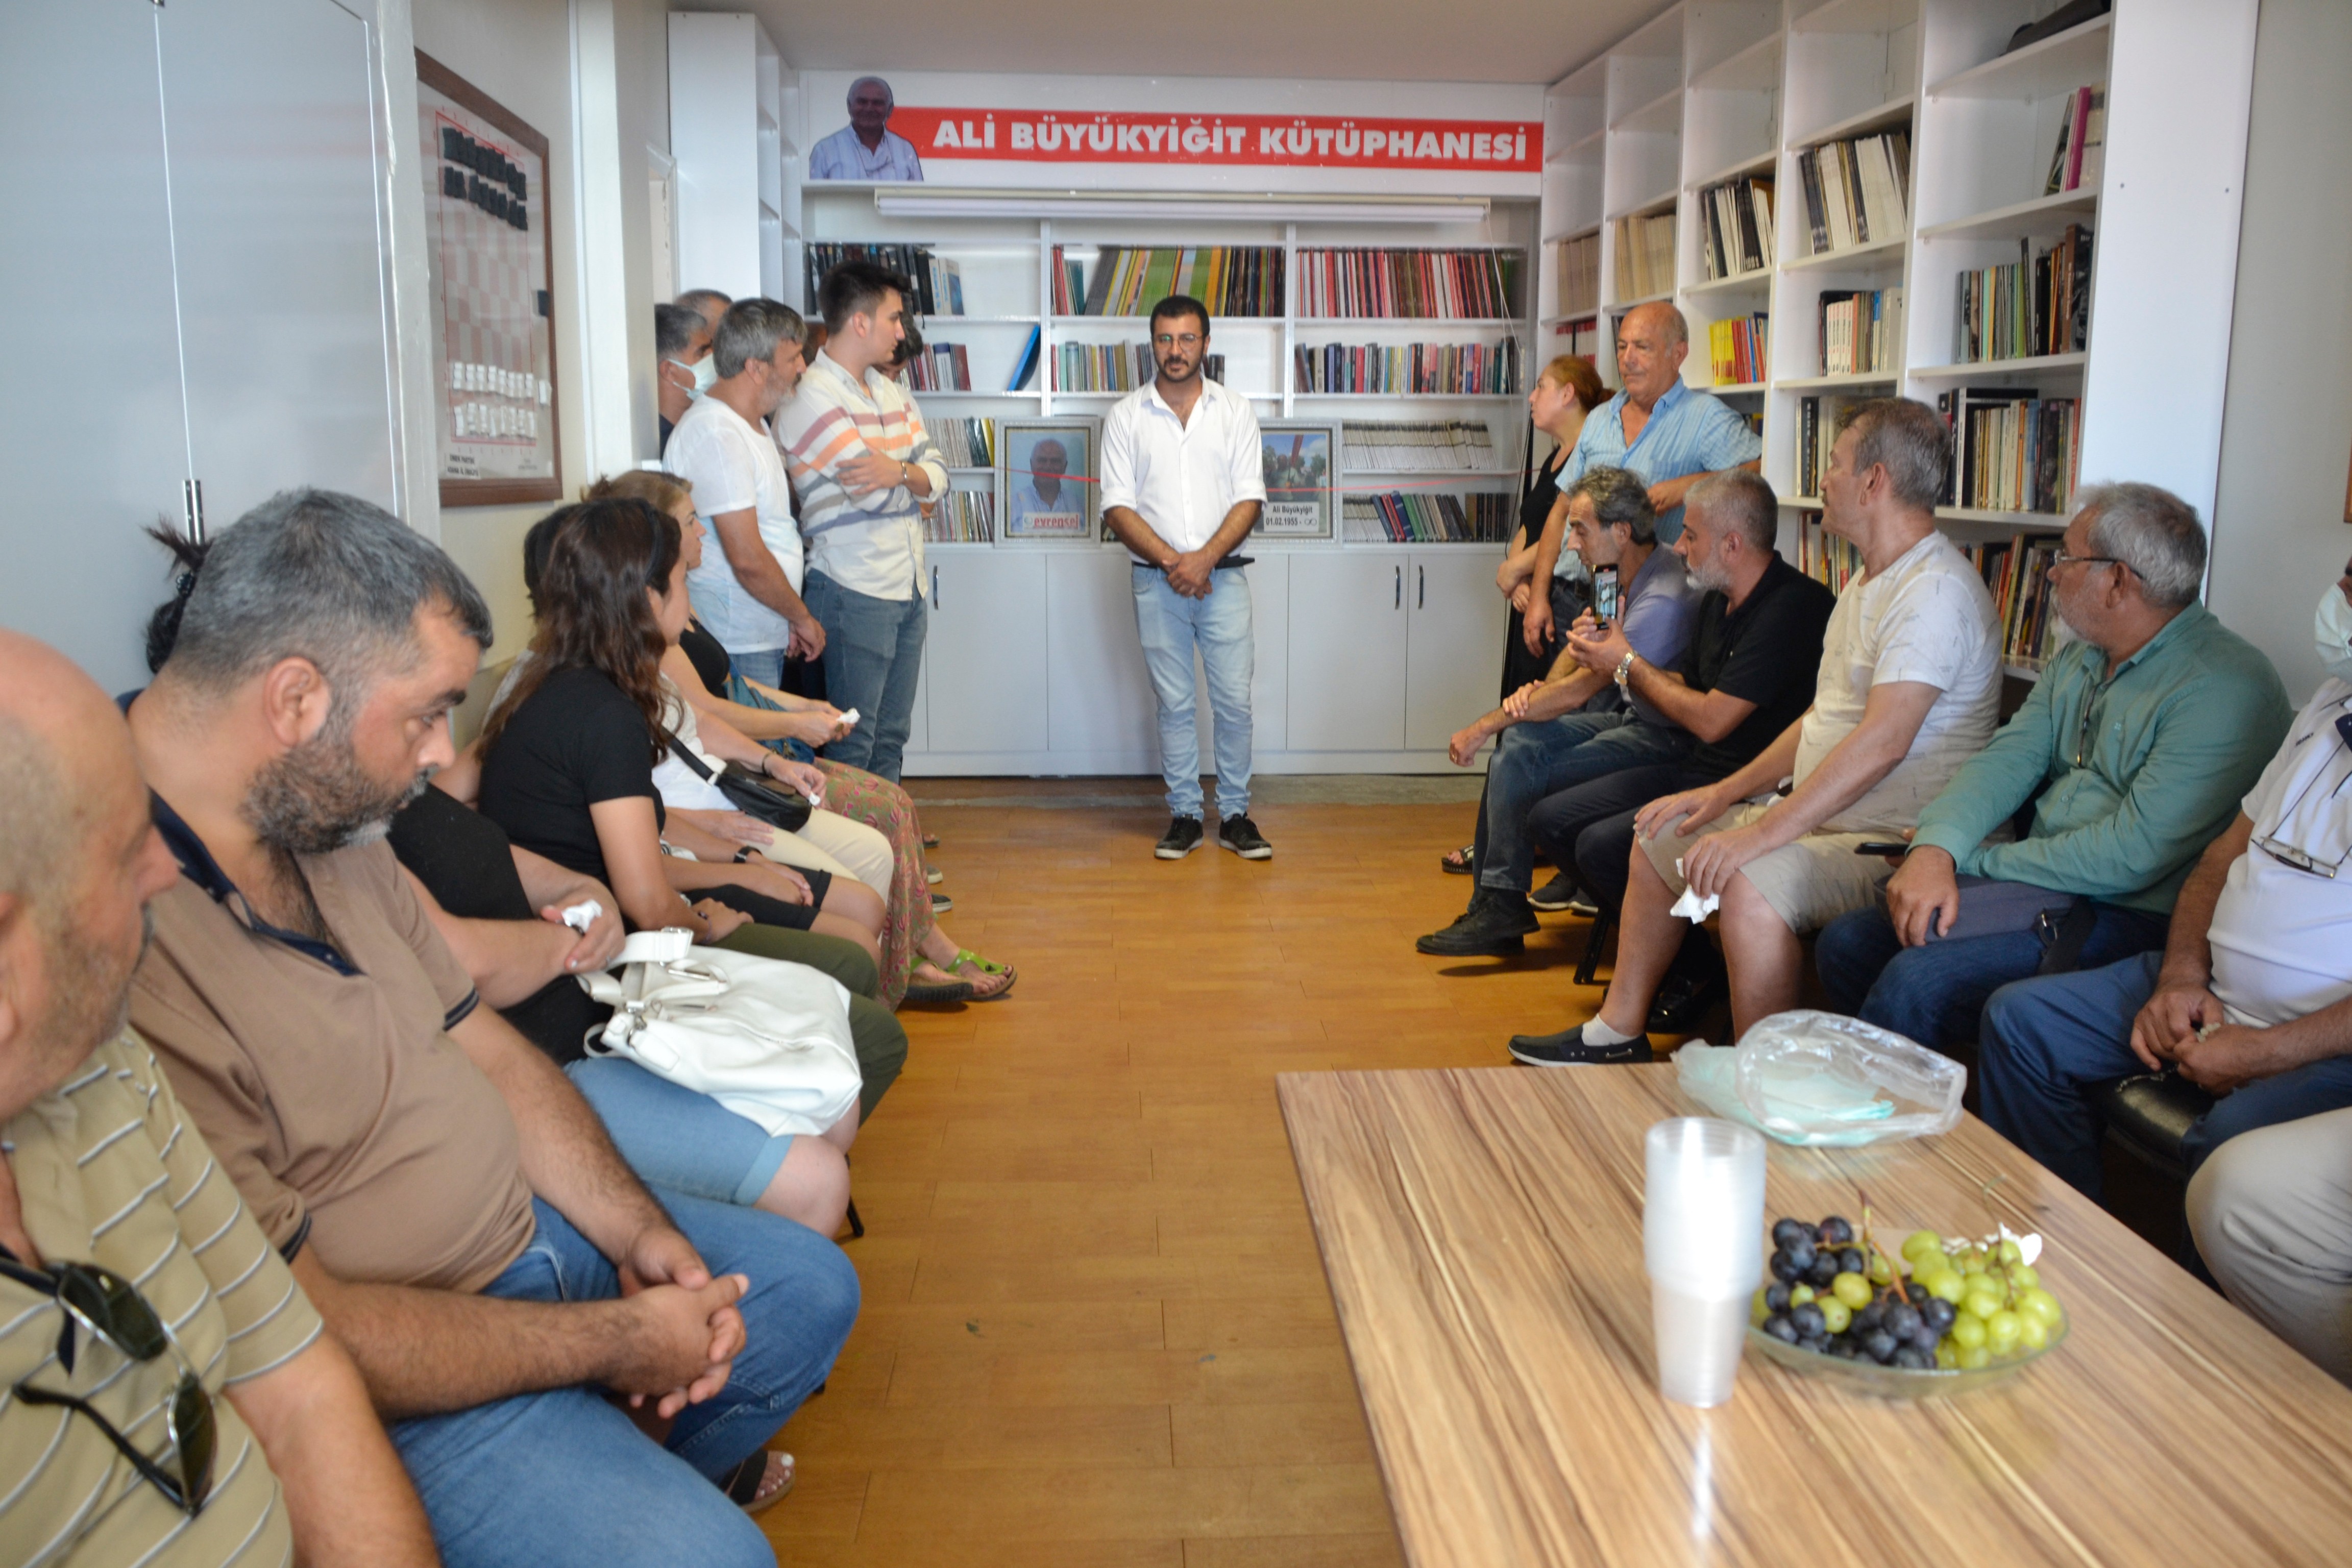 Adana'da Ali Büyükyiğit adına kurulan kütüphanenin açılış töreninden bir fotoğraf.